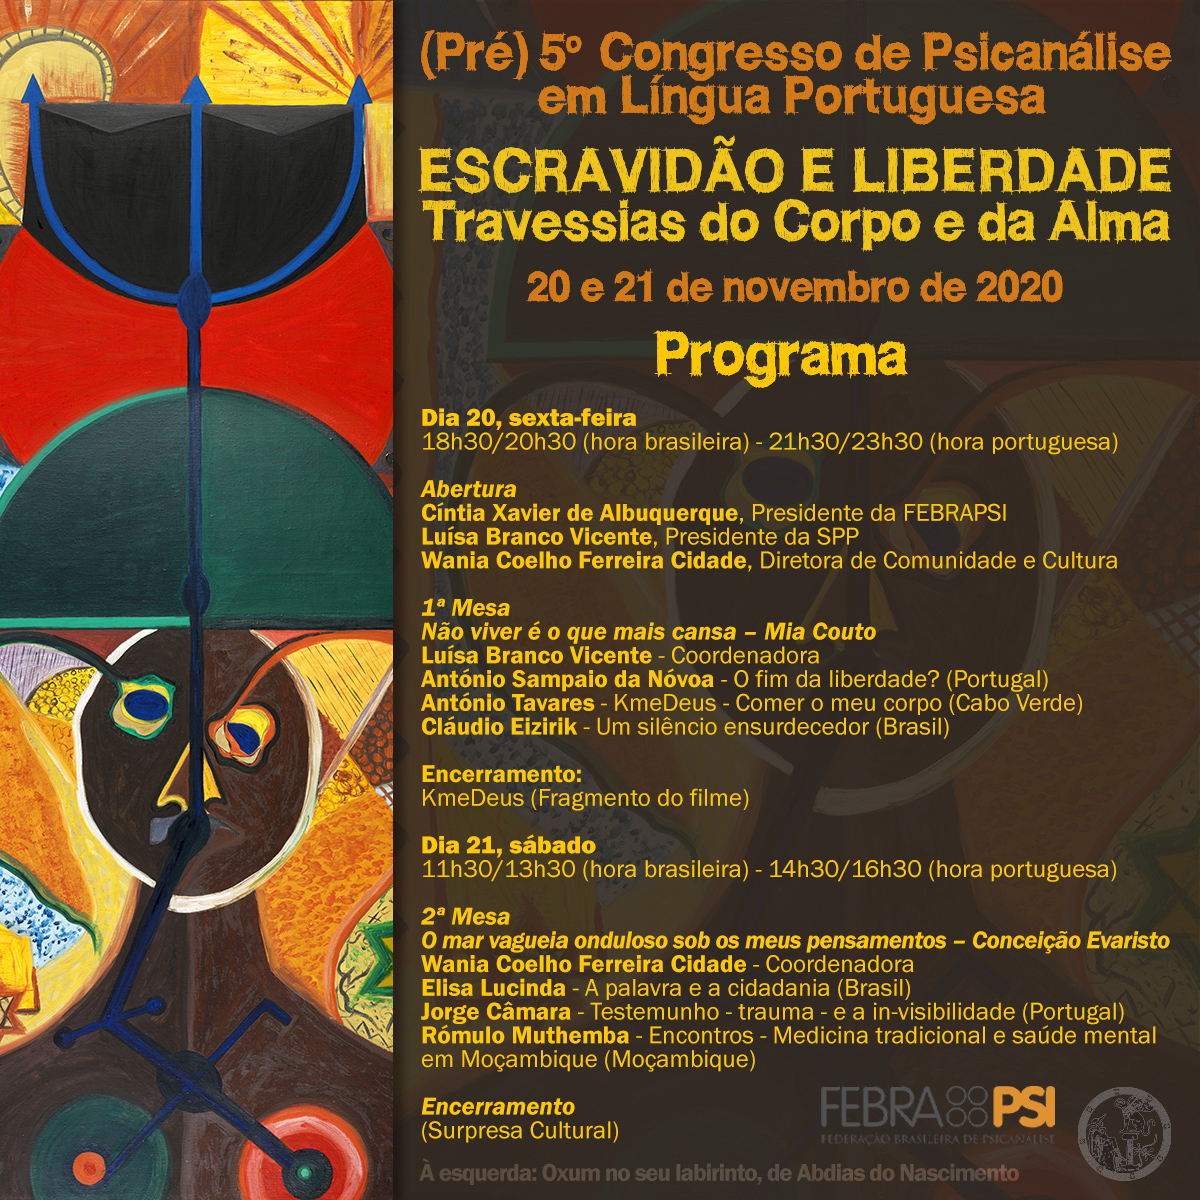 Pré Congresso Virtual de Psicanálise em Língua Portuguesa – Entre na página do evento e faça a sua inscrição. Clique aqui.